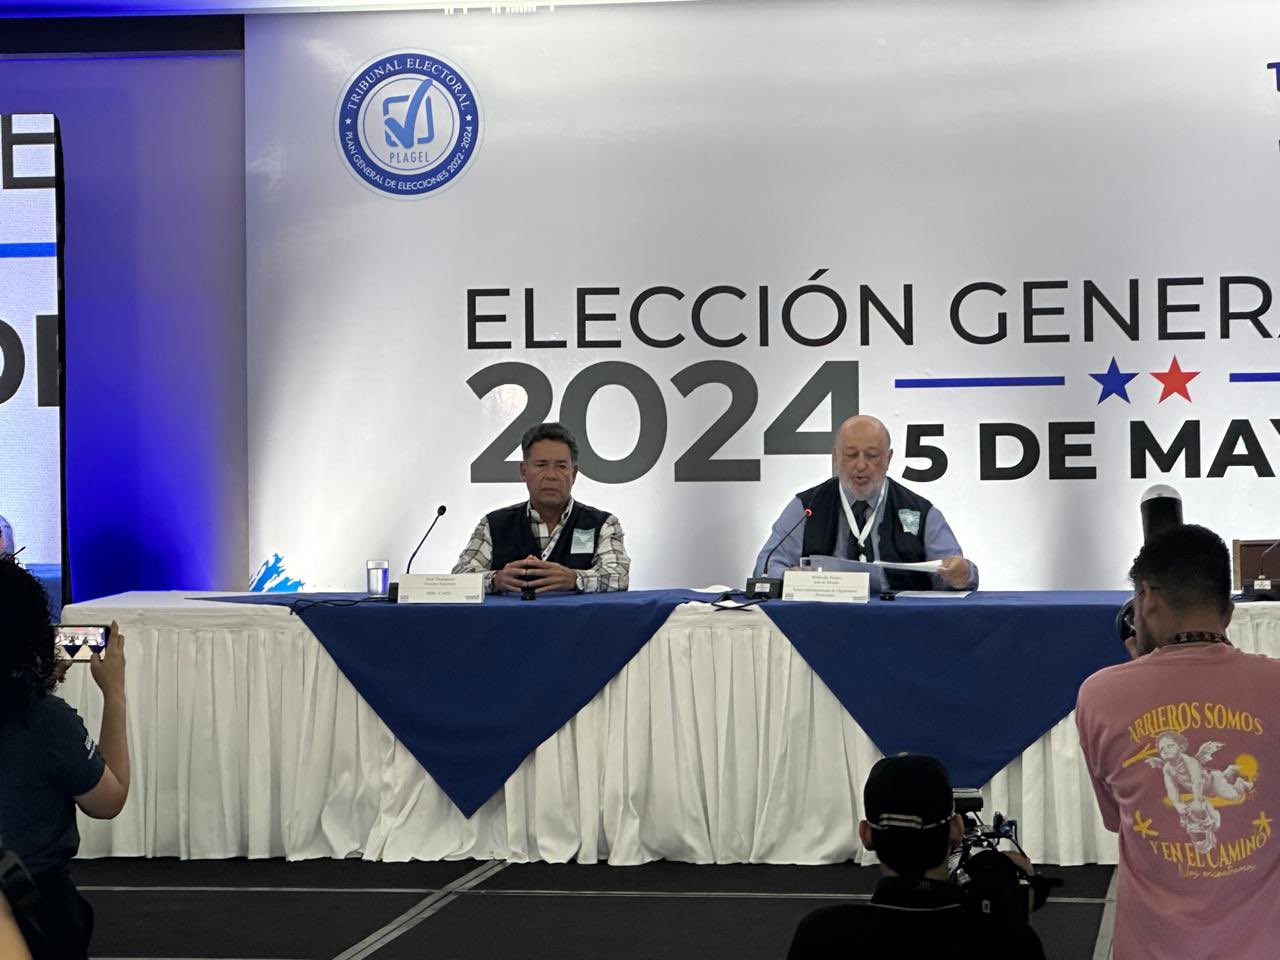 Elecciones en Panamá no escapan a las pasiones y controversias, afirman observadores internacionales  